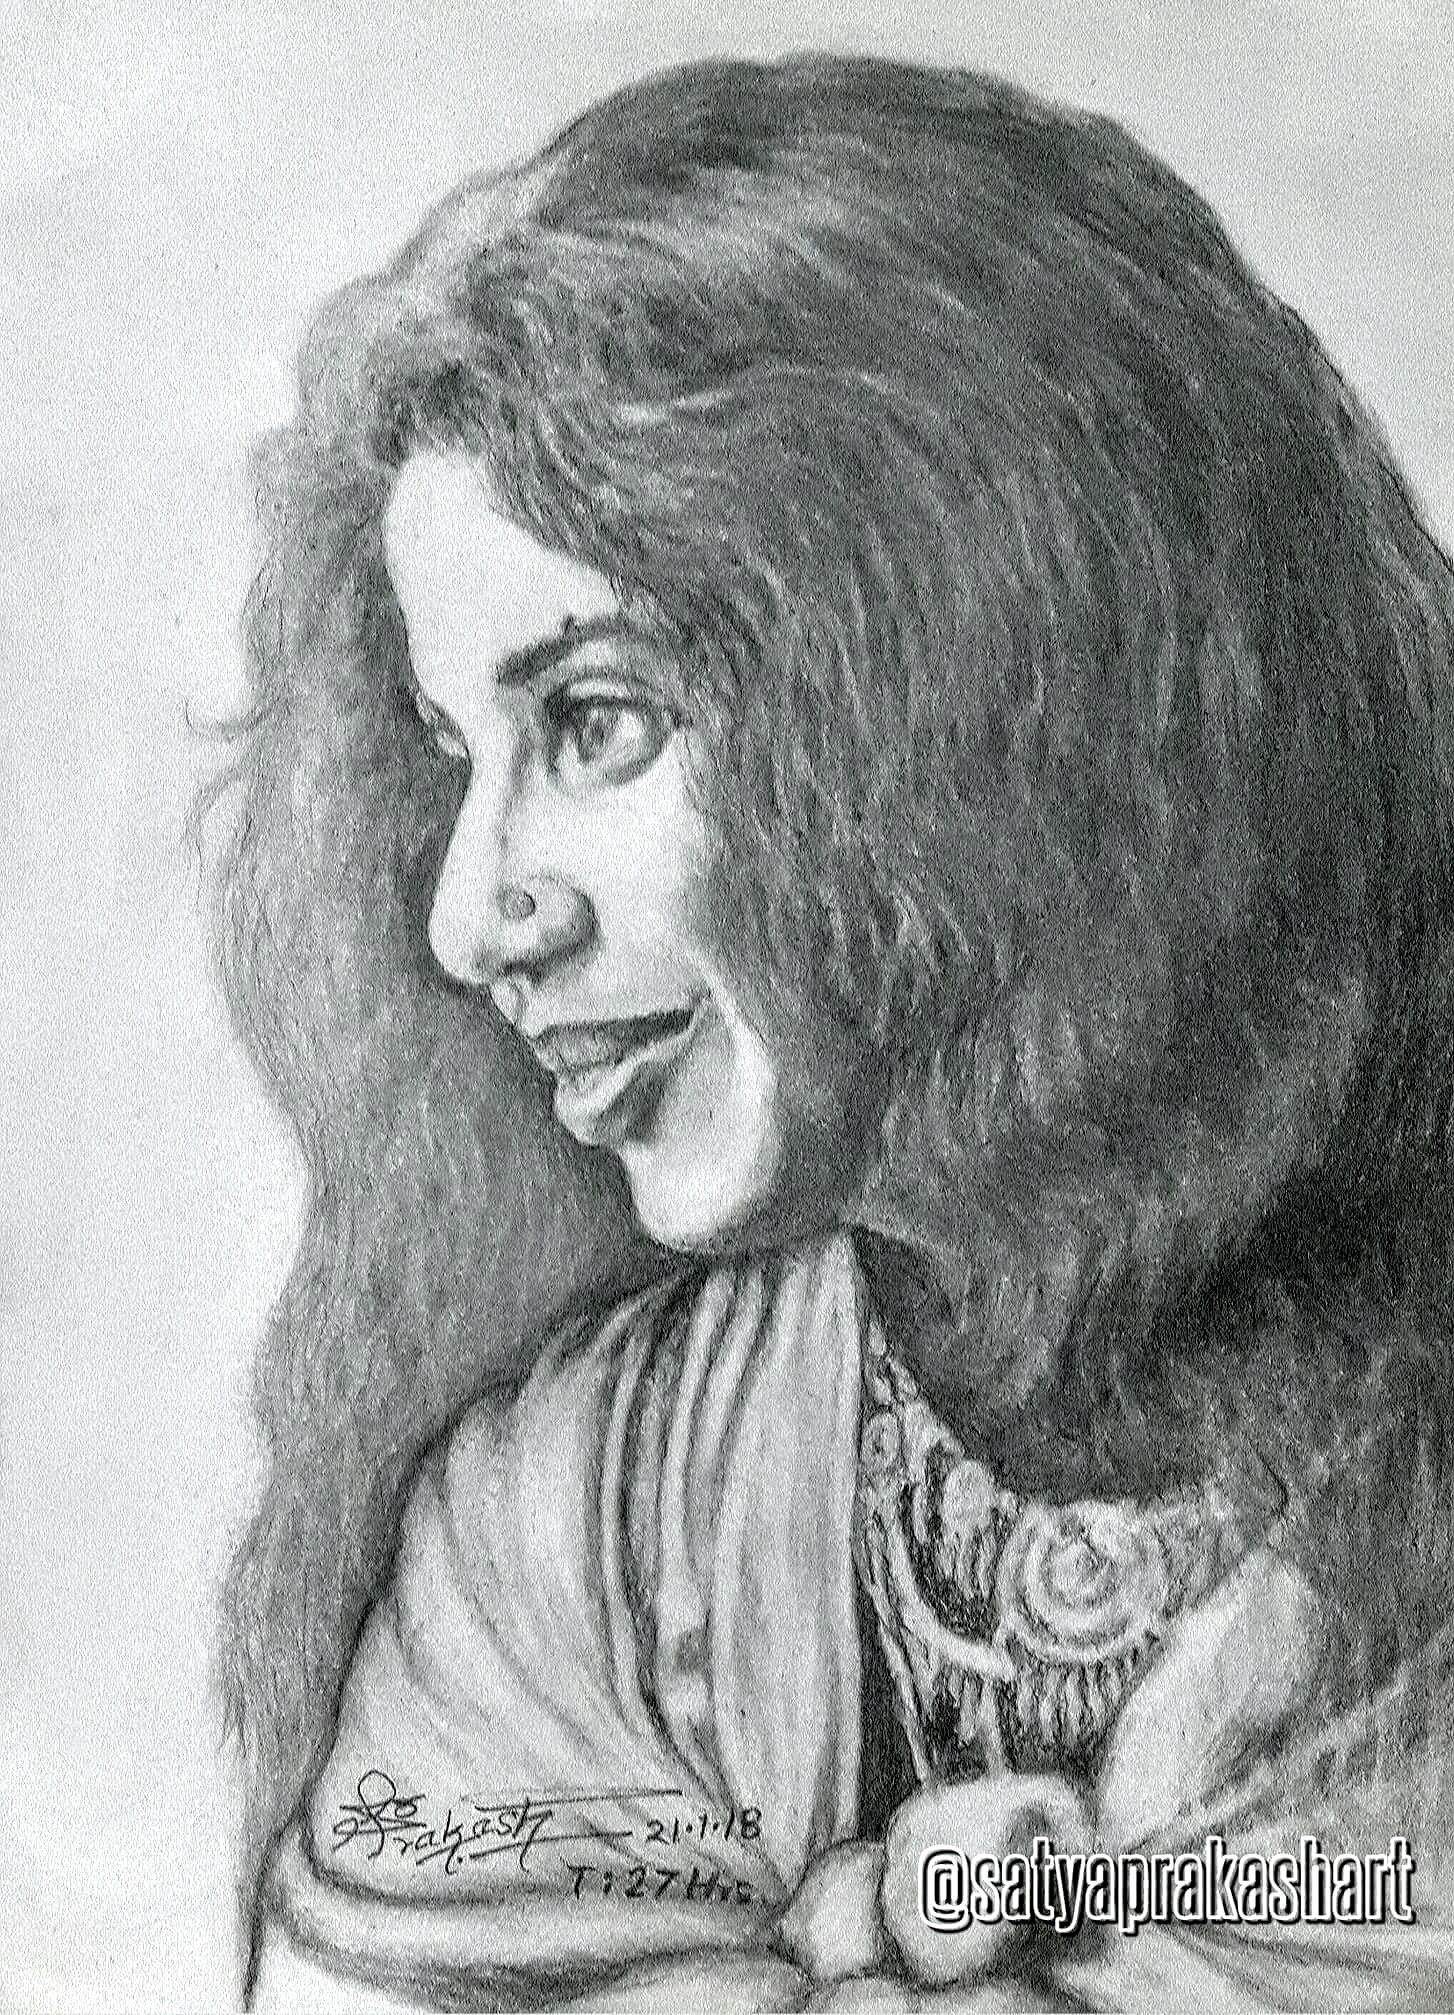 PORTRAIT OF MY WIFE by Satya Prakash